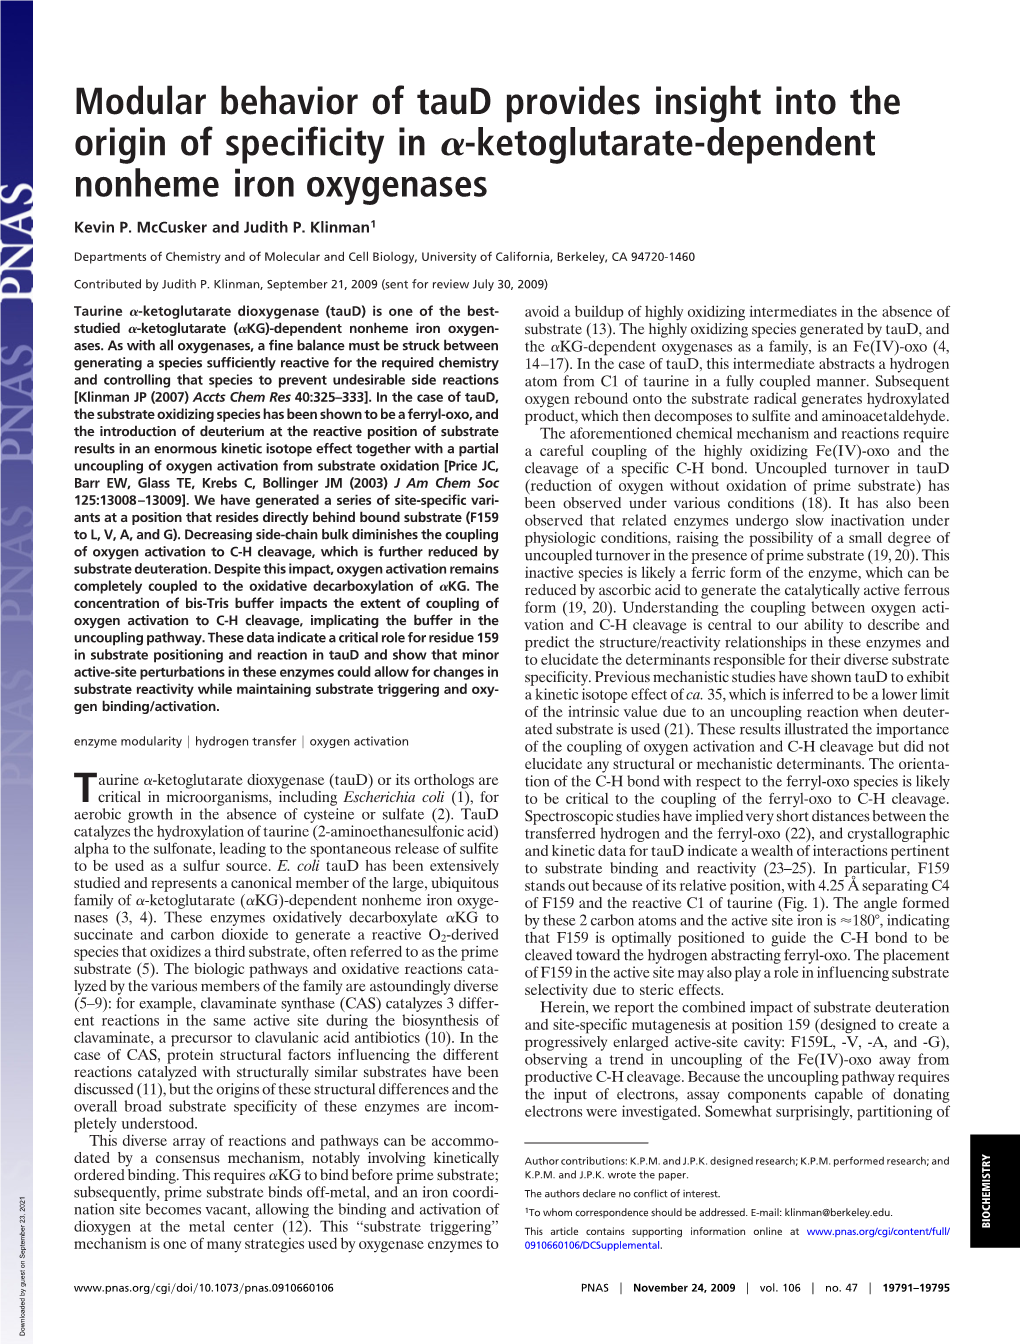 Ketoglutarate-Dependent Nonheme Iron Oxygenases